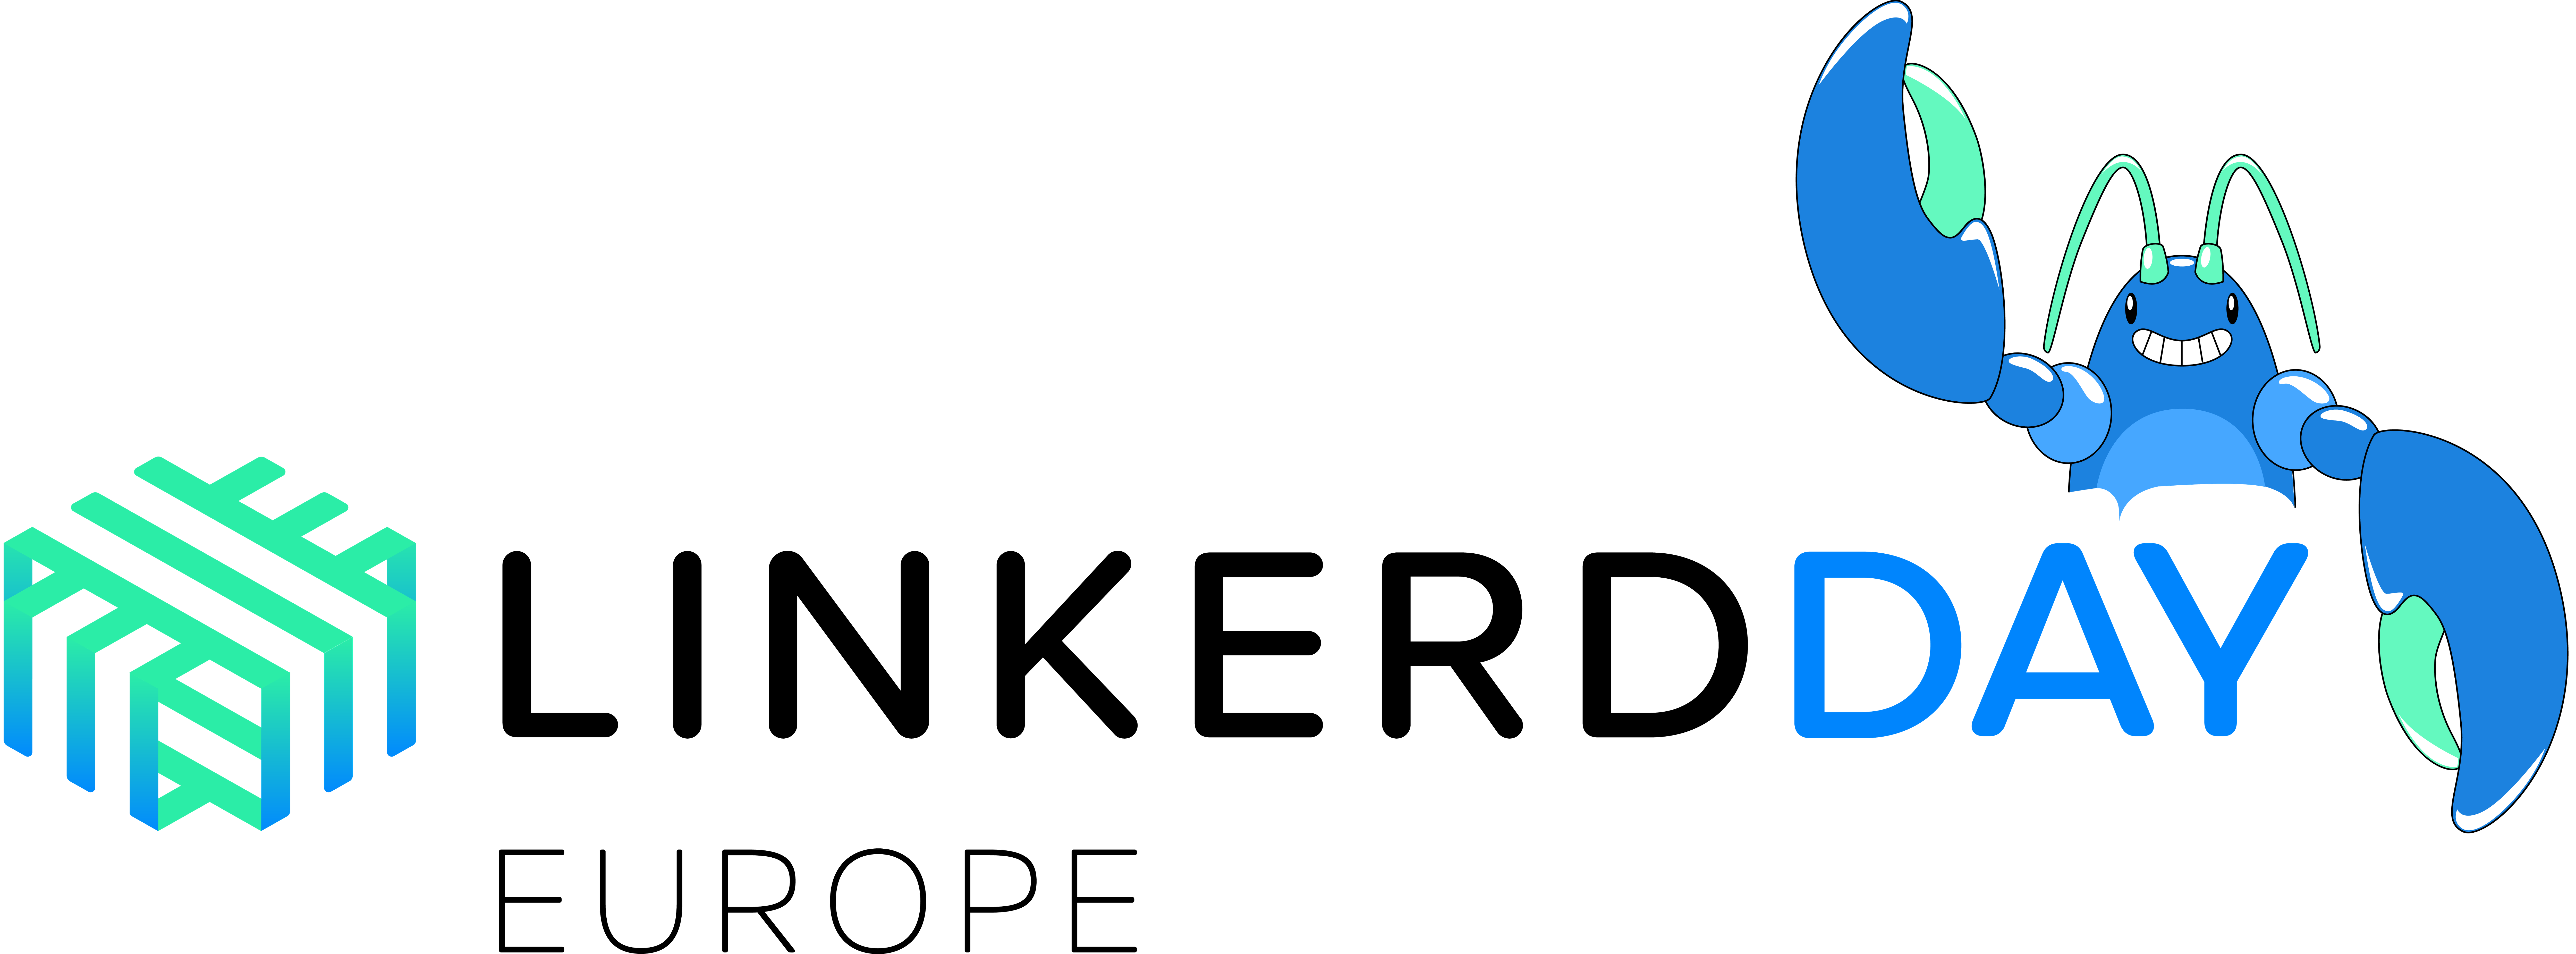 Linkerd Day logo